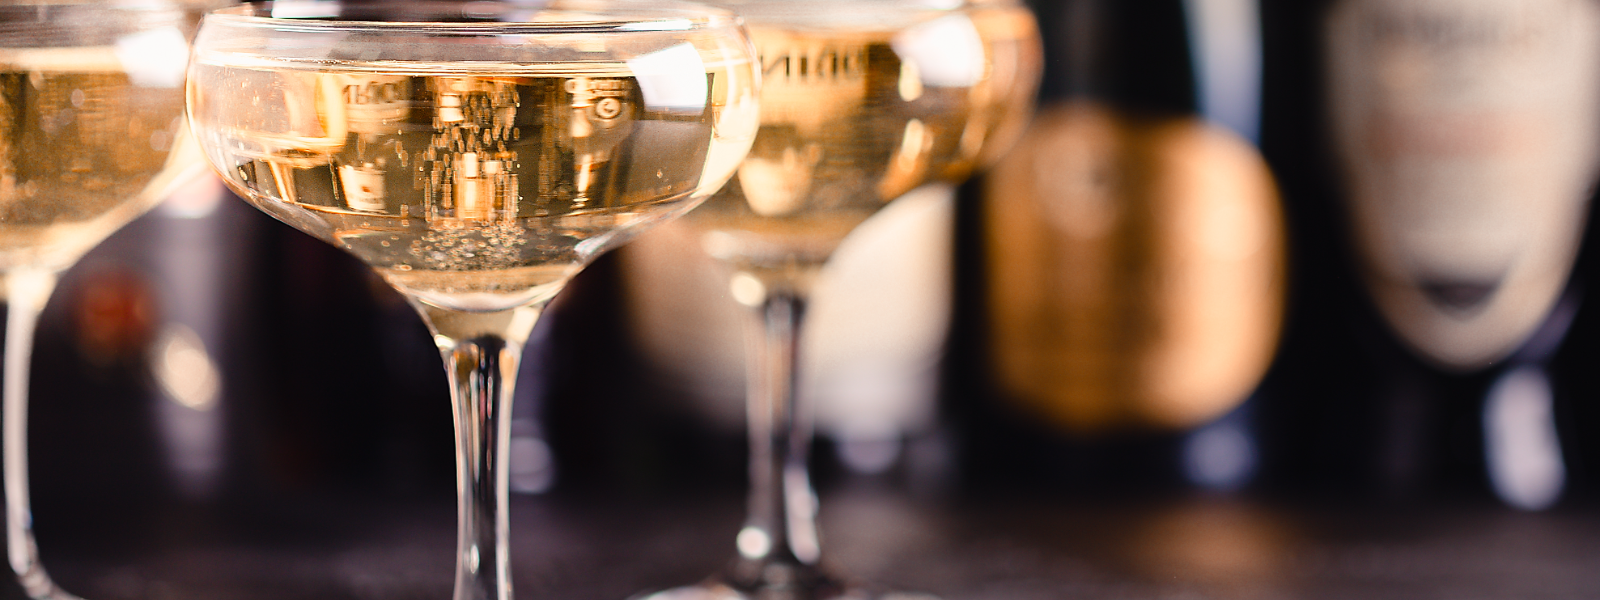 ENOTECA NORDICA OÜ - Meie erialaks on erakordsete Prantsuse šampanjade, Itaalia tarbijaveinide, Itaalia vahuveinide, His...